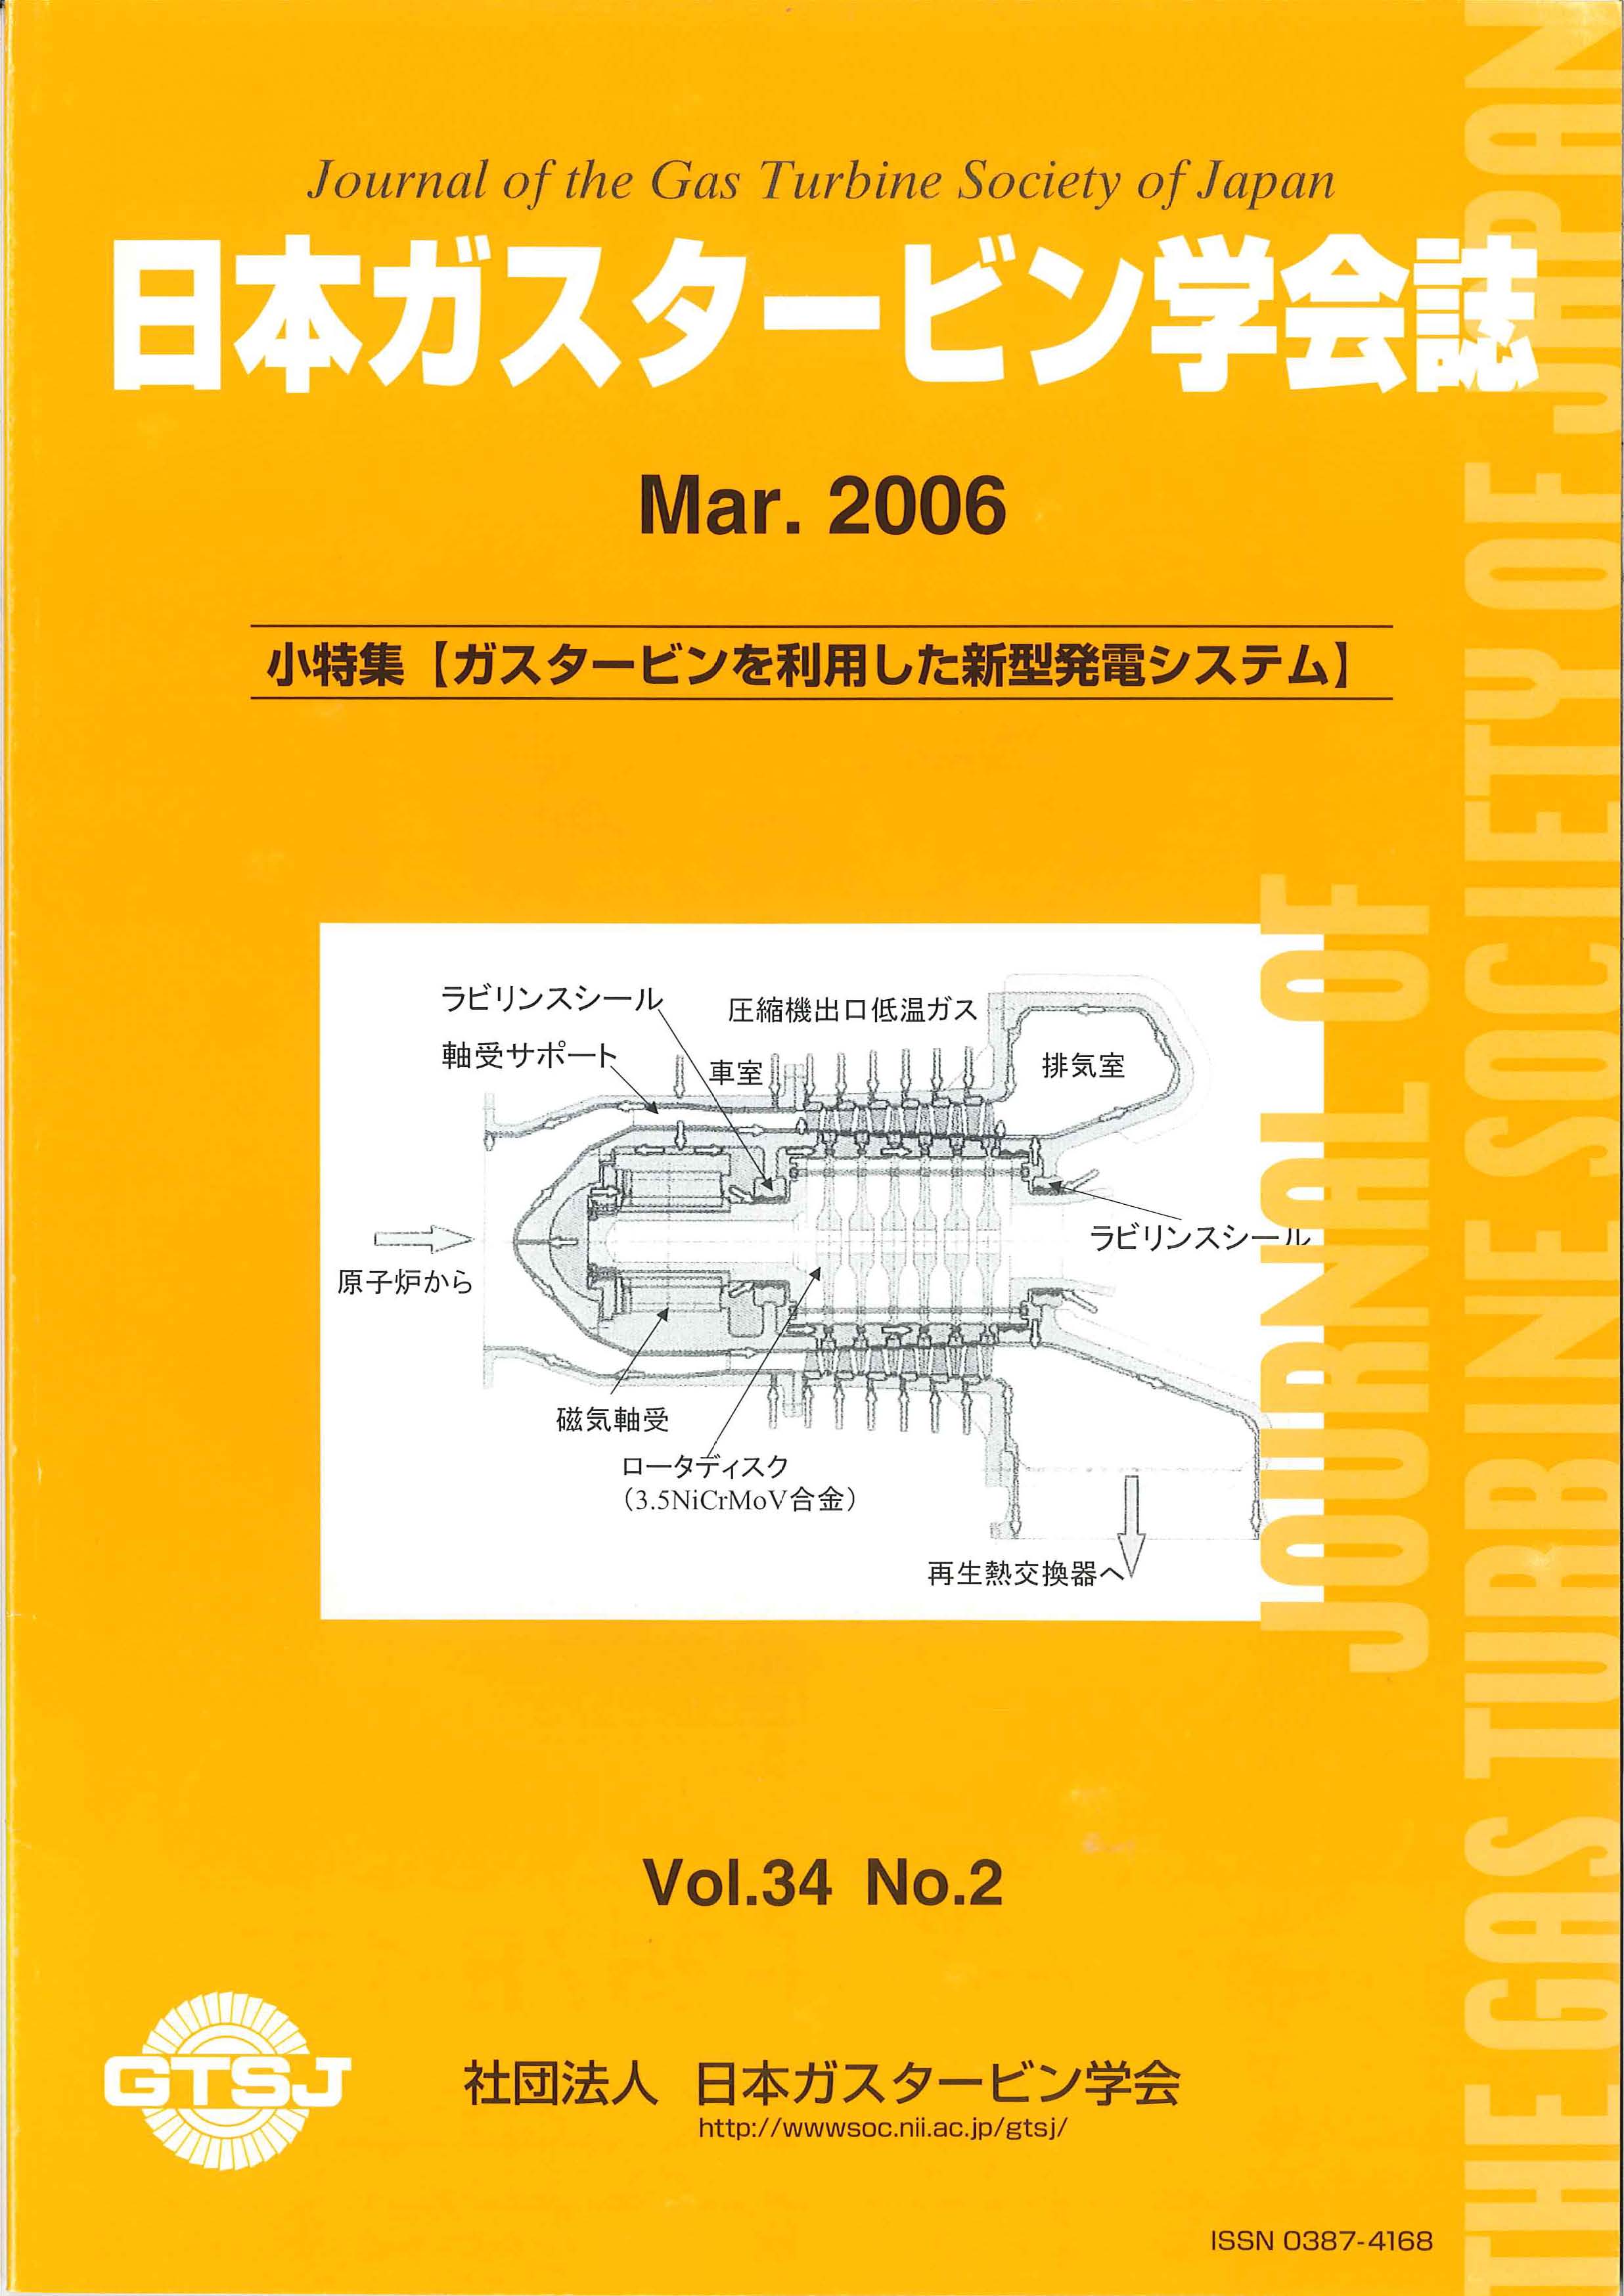 日本ガスタービン学会誌 Vol.34 No.2 2006年3月 表紙画像